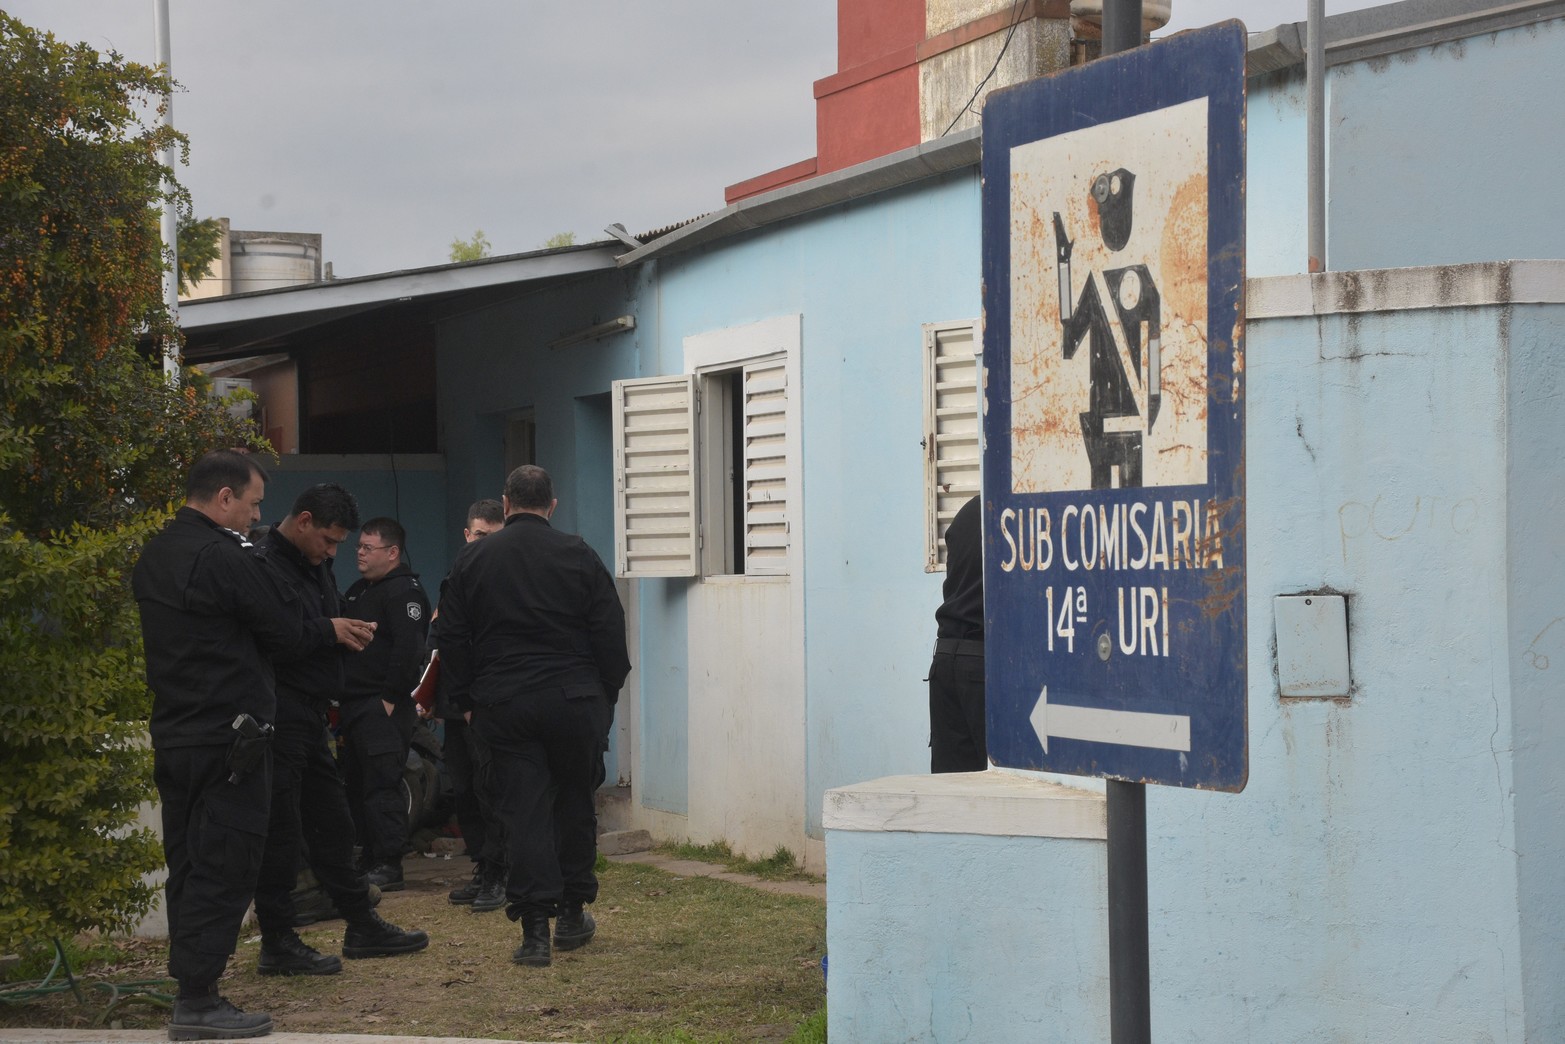 Una revuelta en la subcomisaria 14 dejó dos muertos.Foto Flavio Raina